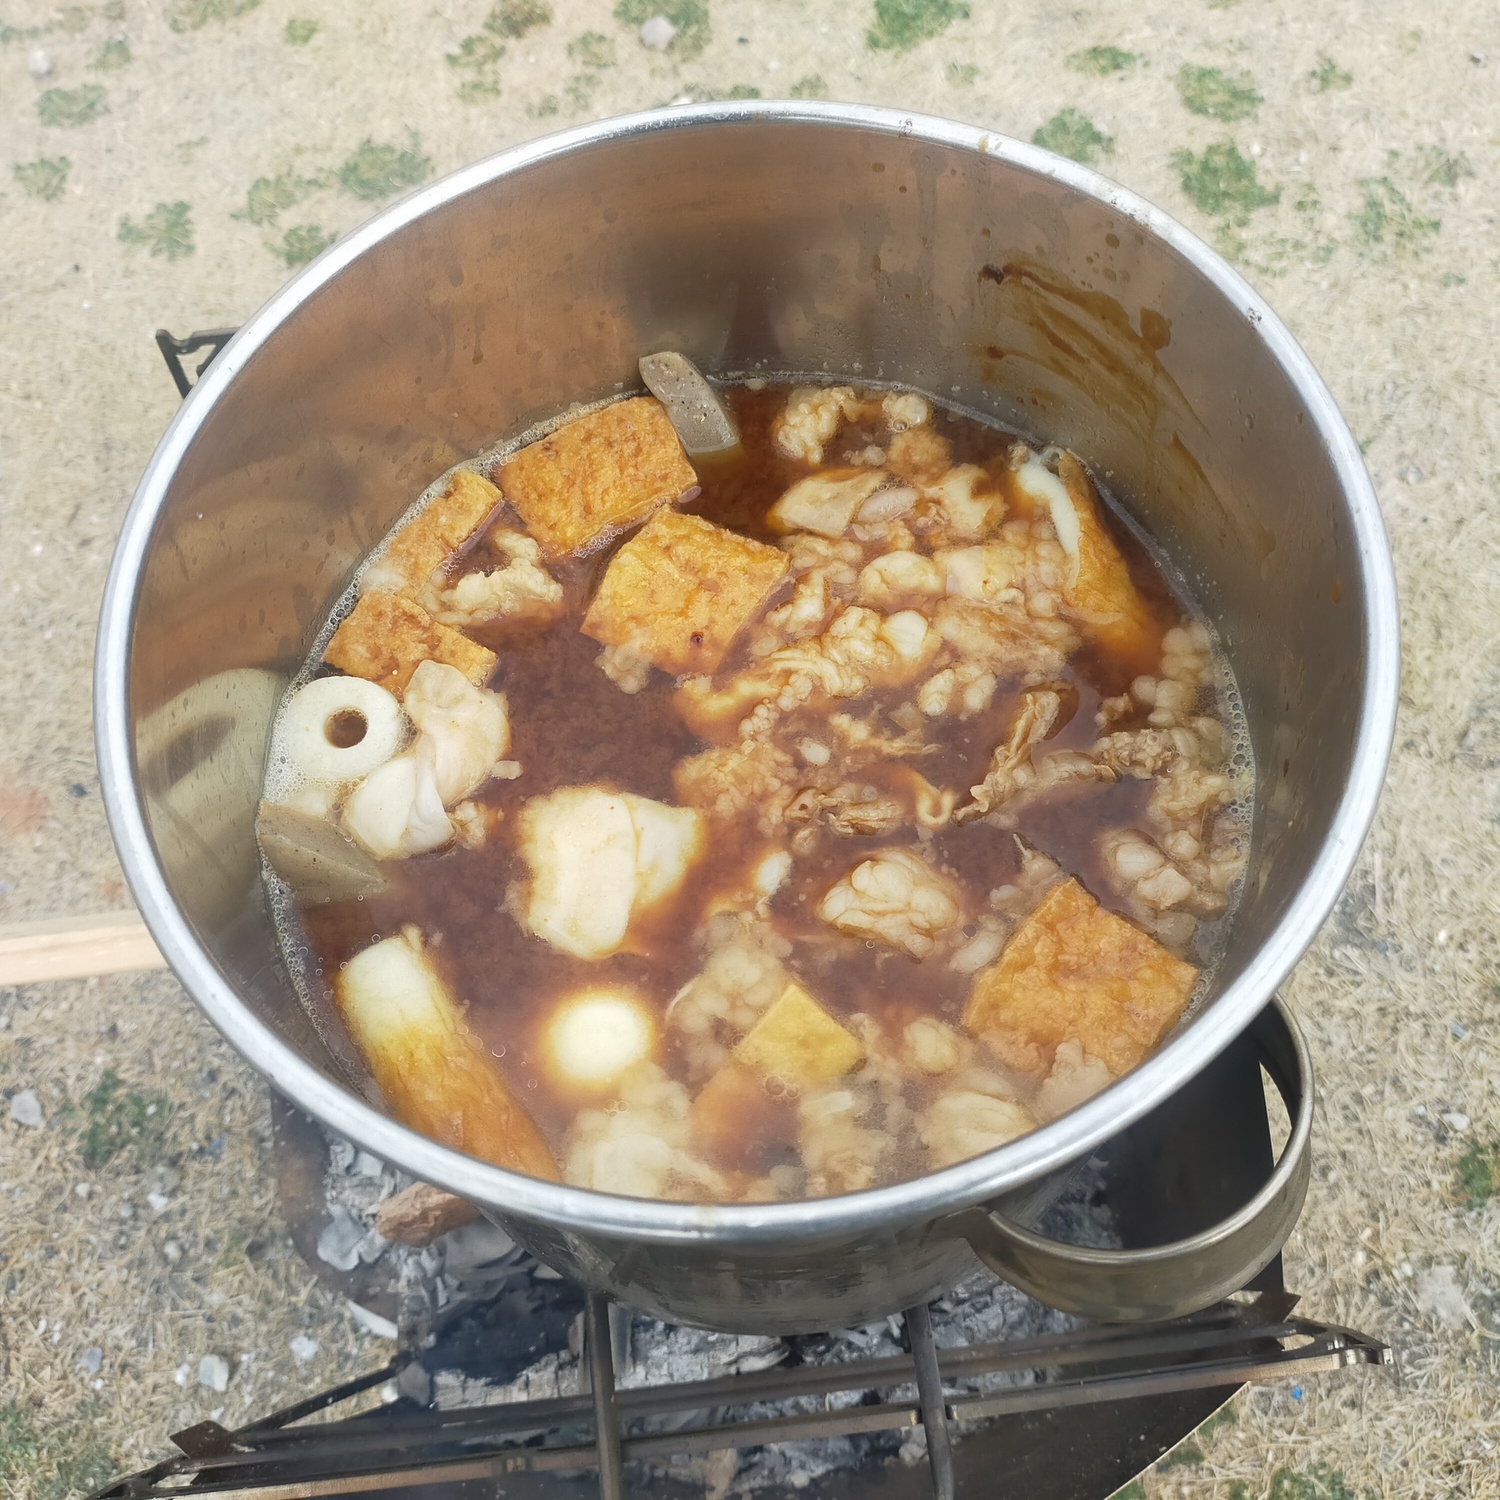 赤茶色のスープに入った具材が煮込まれている。